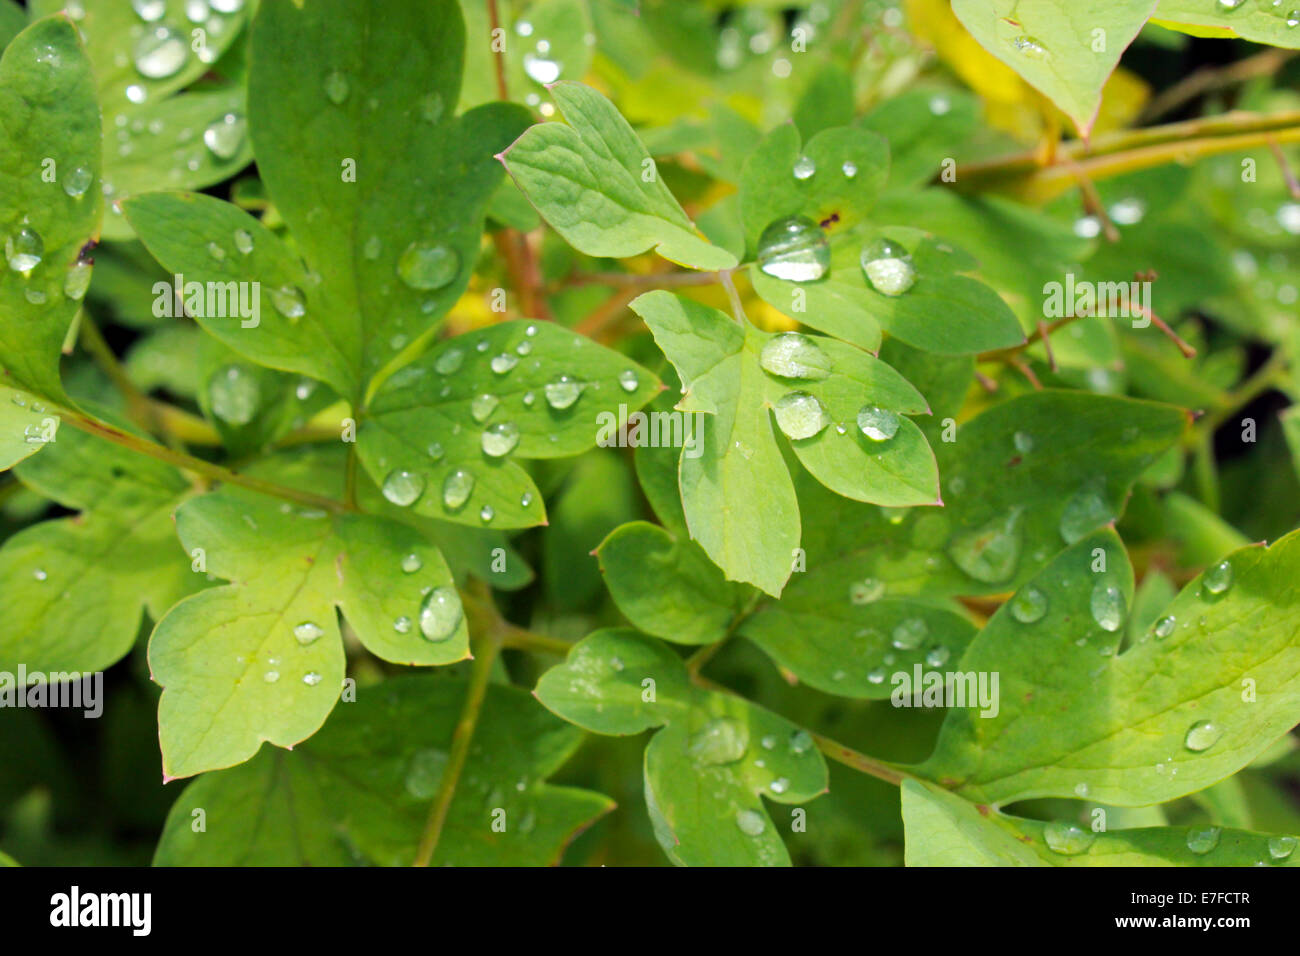 Gouttes d'eau transparentes sur les feuilles vertes de la plante Banque D'Images